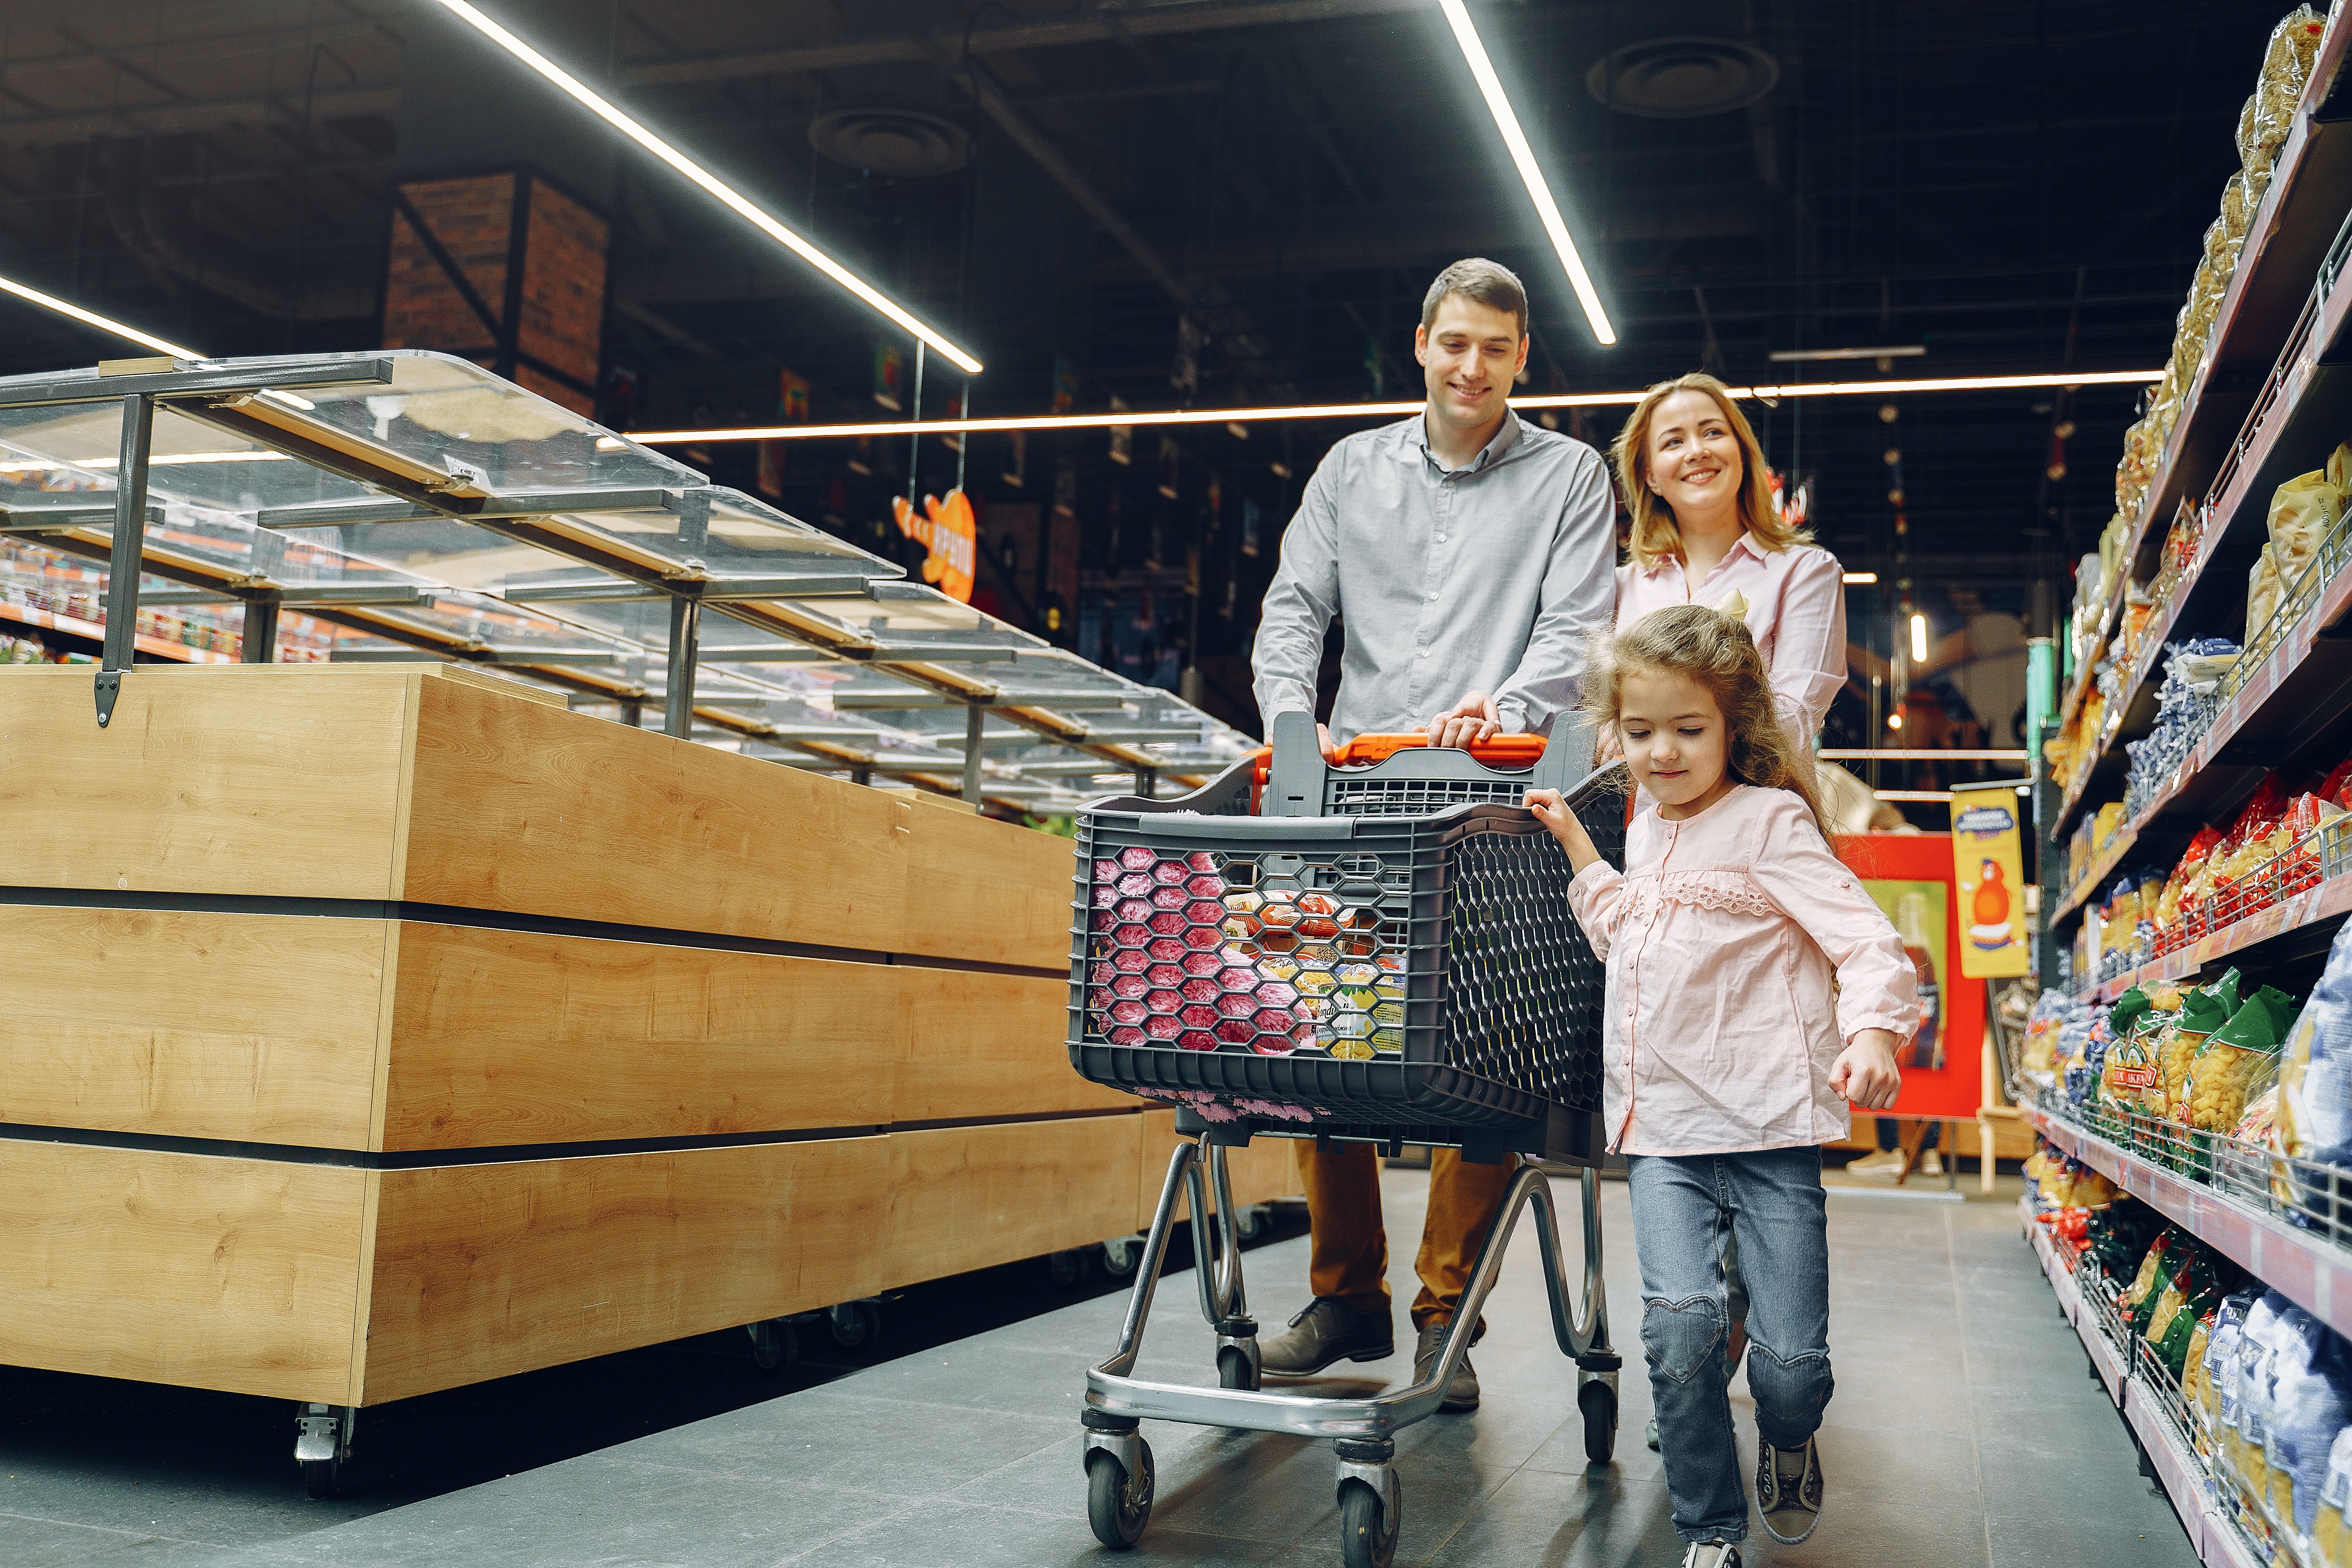 We go shopping now. Семья в магазине. Семейный шоппинг. Семья в супермаркете. Гипермаркет семья.